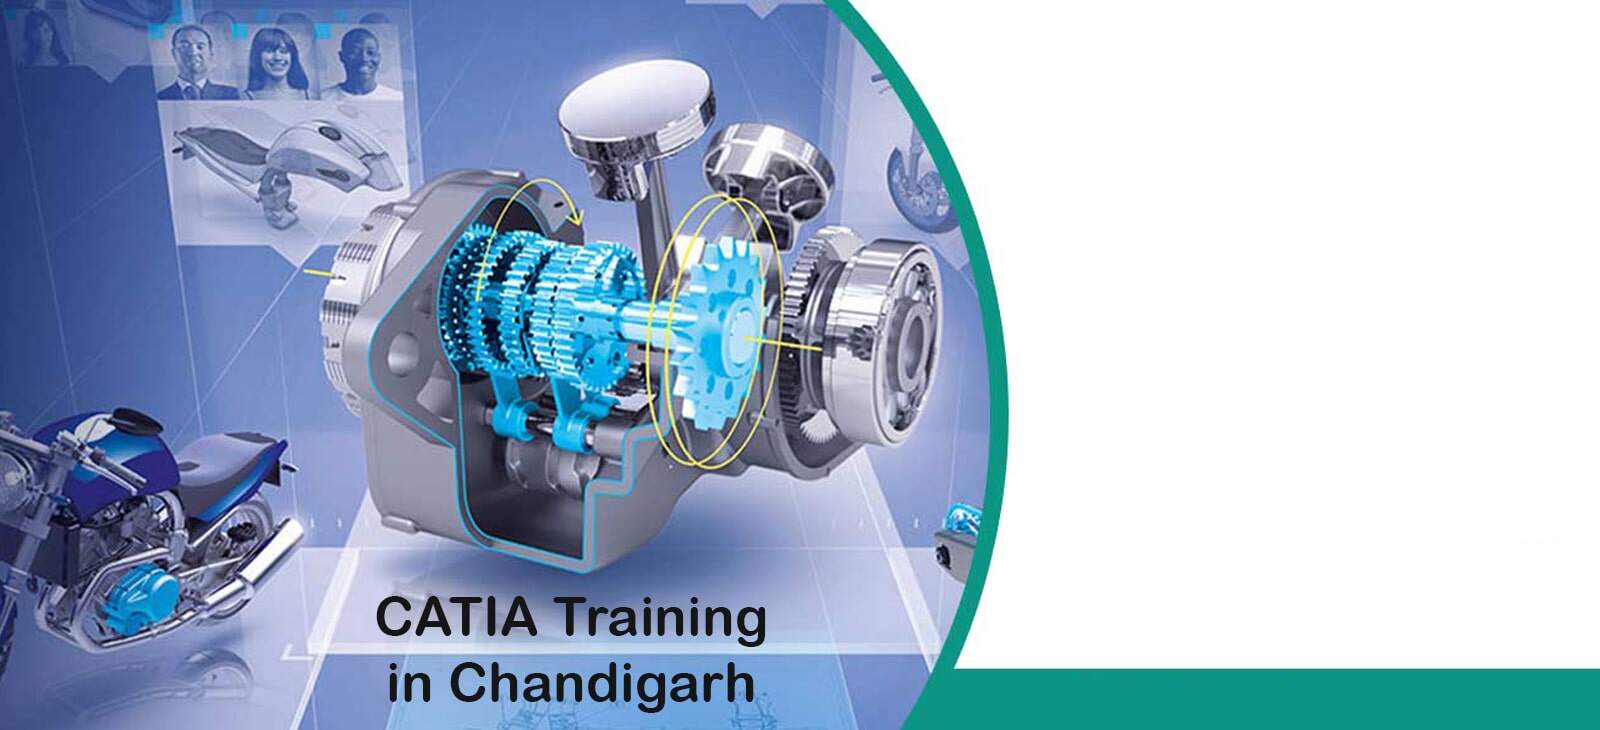 CATIA Training in Chandigarh